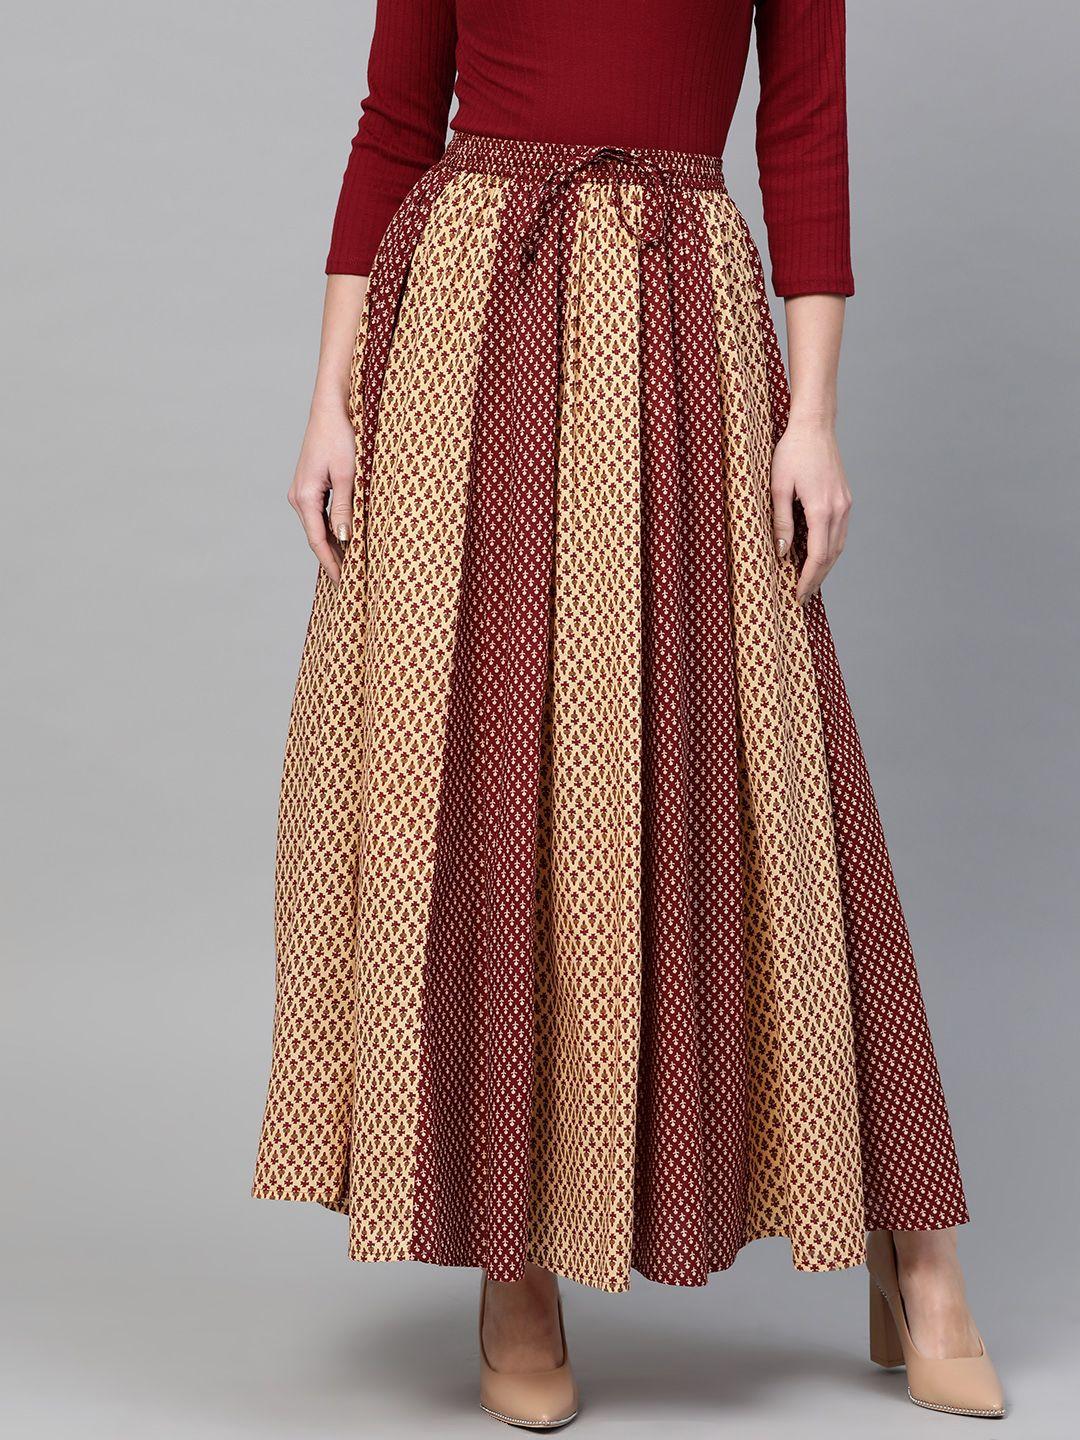 anayna-women-maroon-&-beige-printed-flared-maxi-skirt